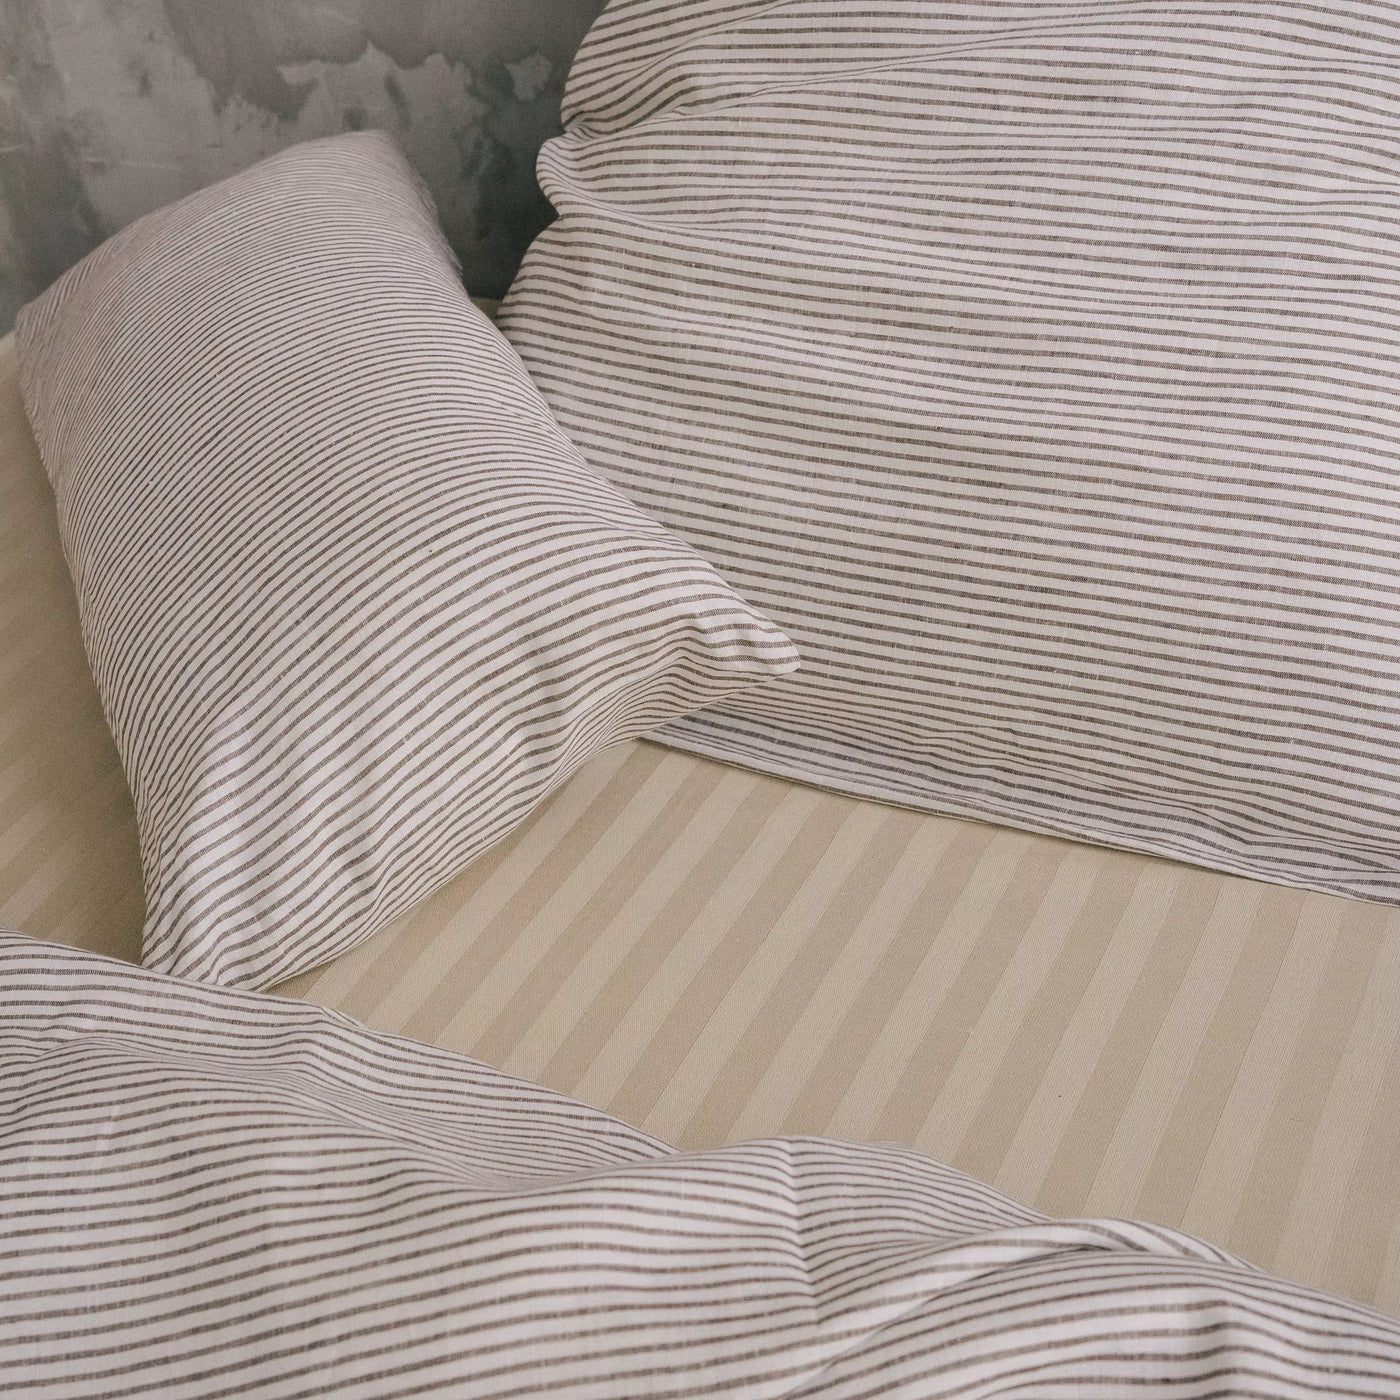 Acquista il set di biancheria da letto in puro lino 135x200 in bianco con strisce marroni 1